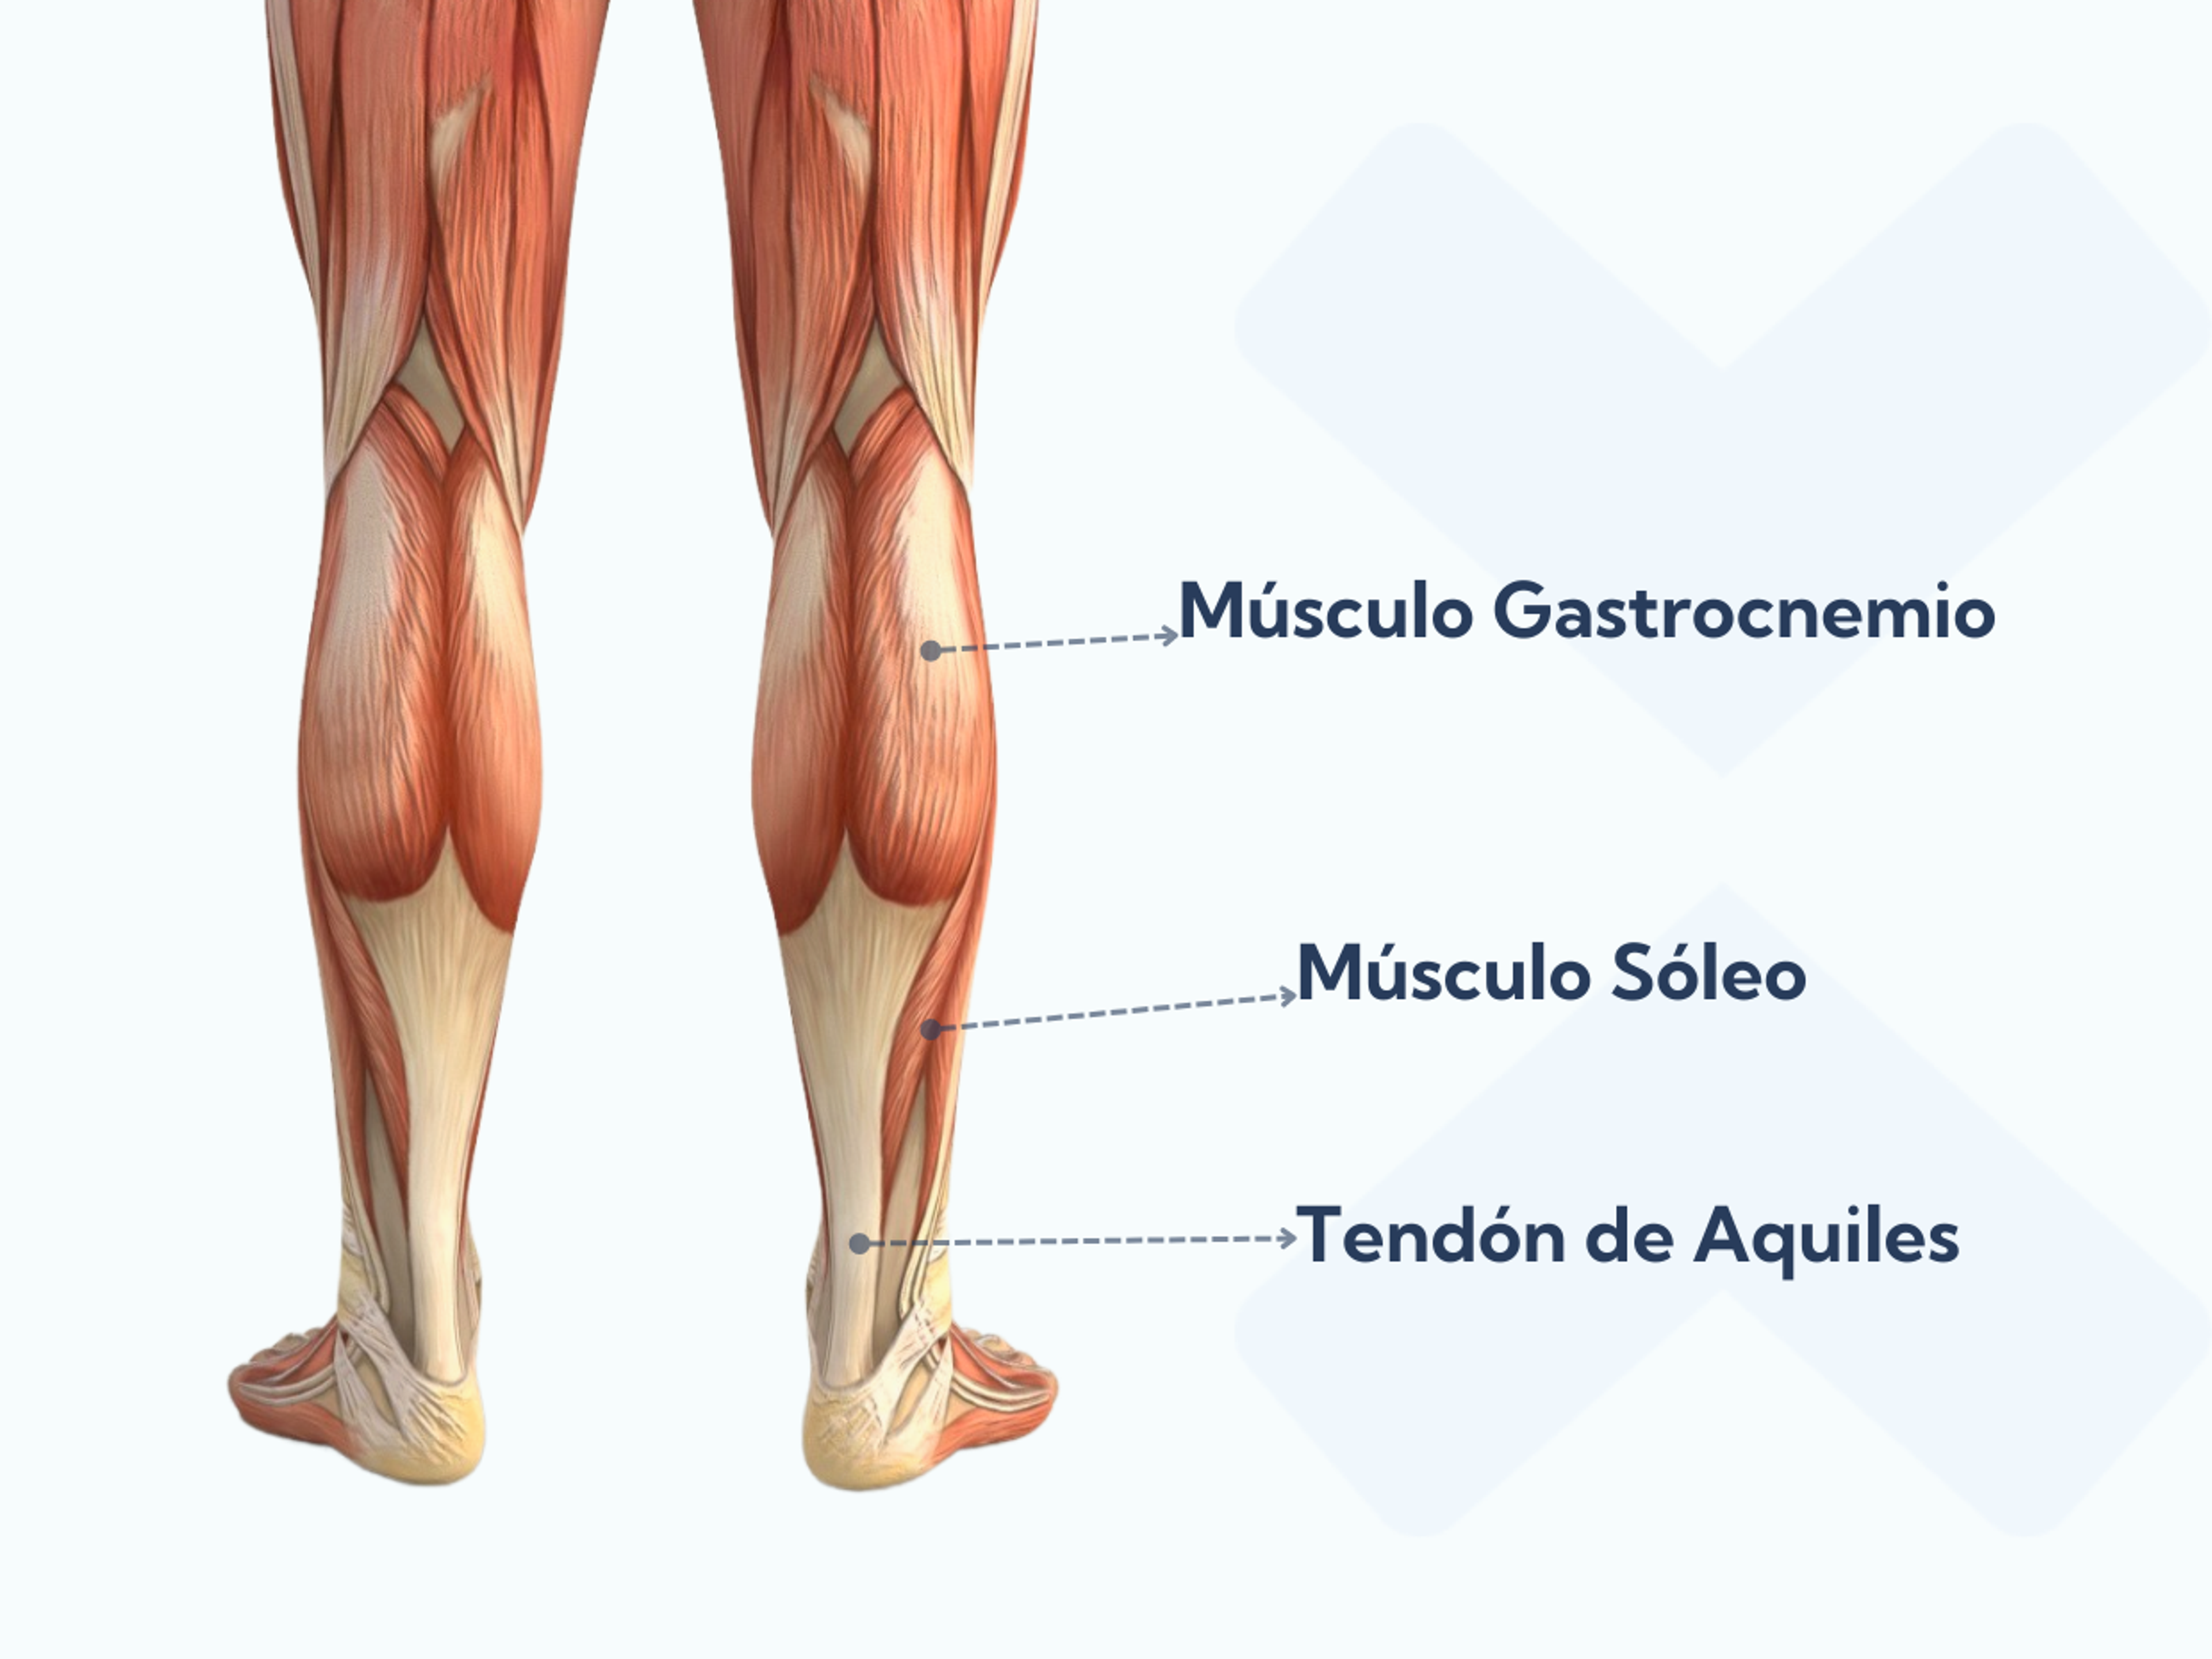 Anatomía de los músculos de la pantorrilla y del tendón de Aquiles